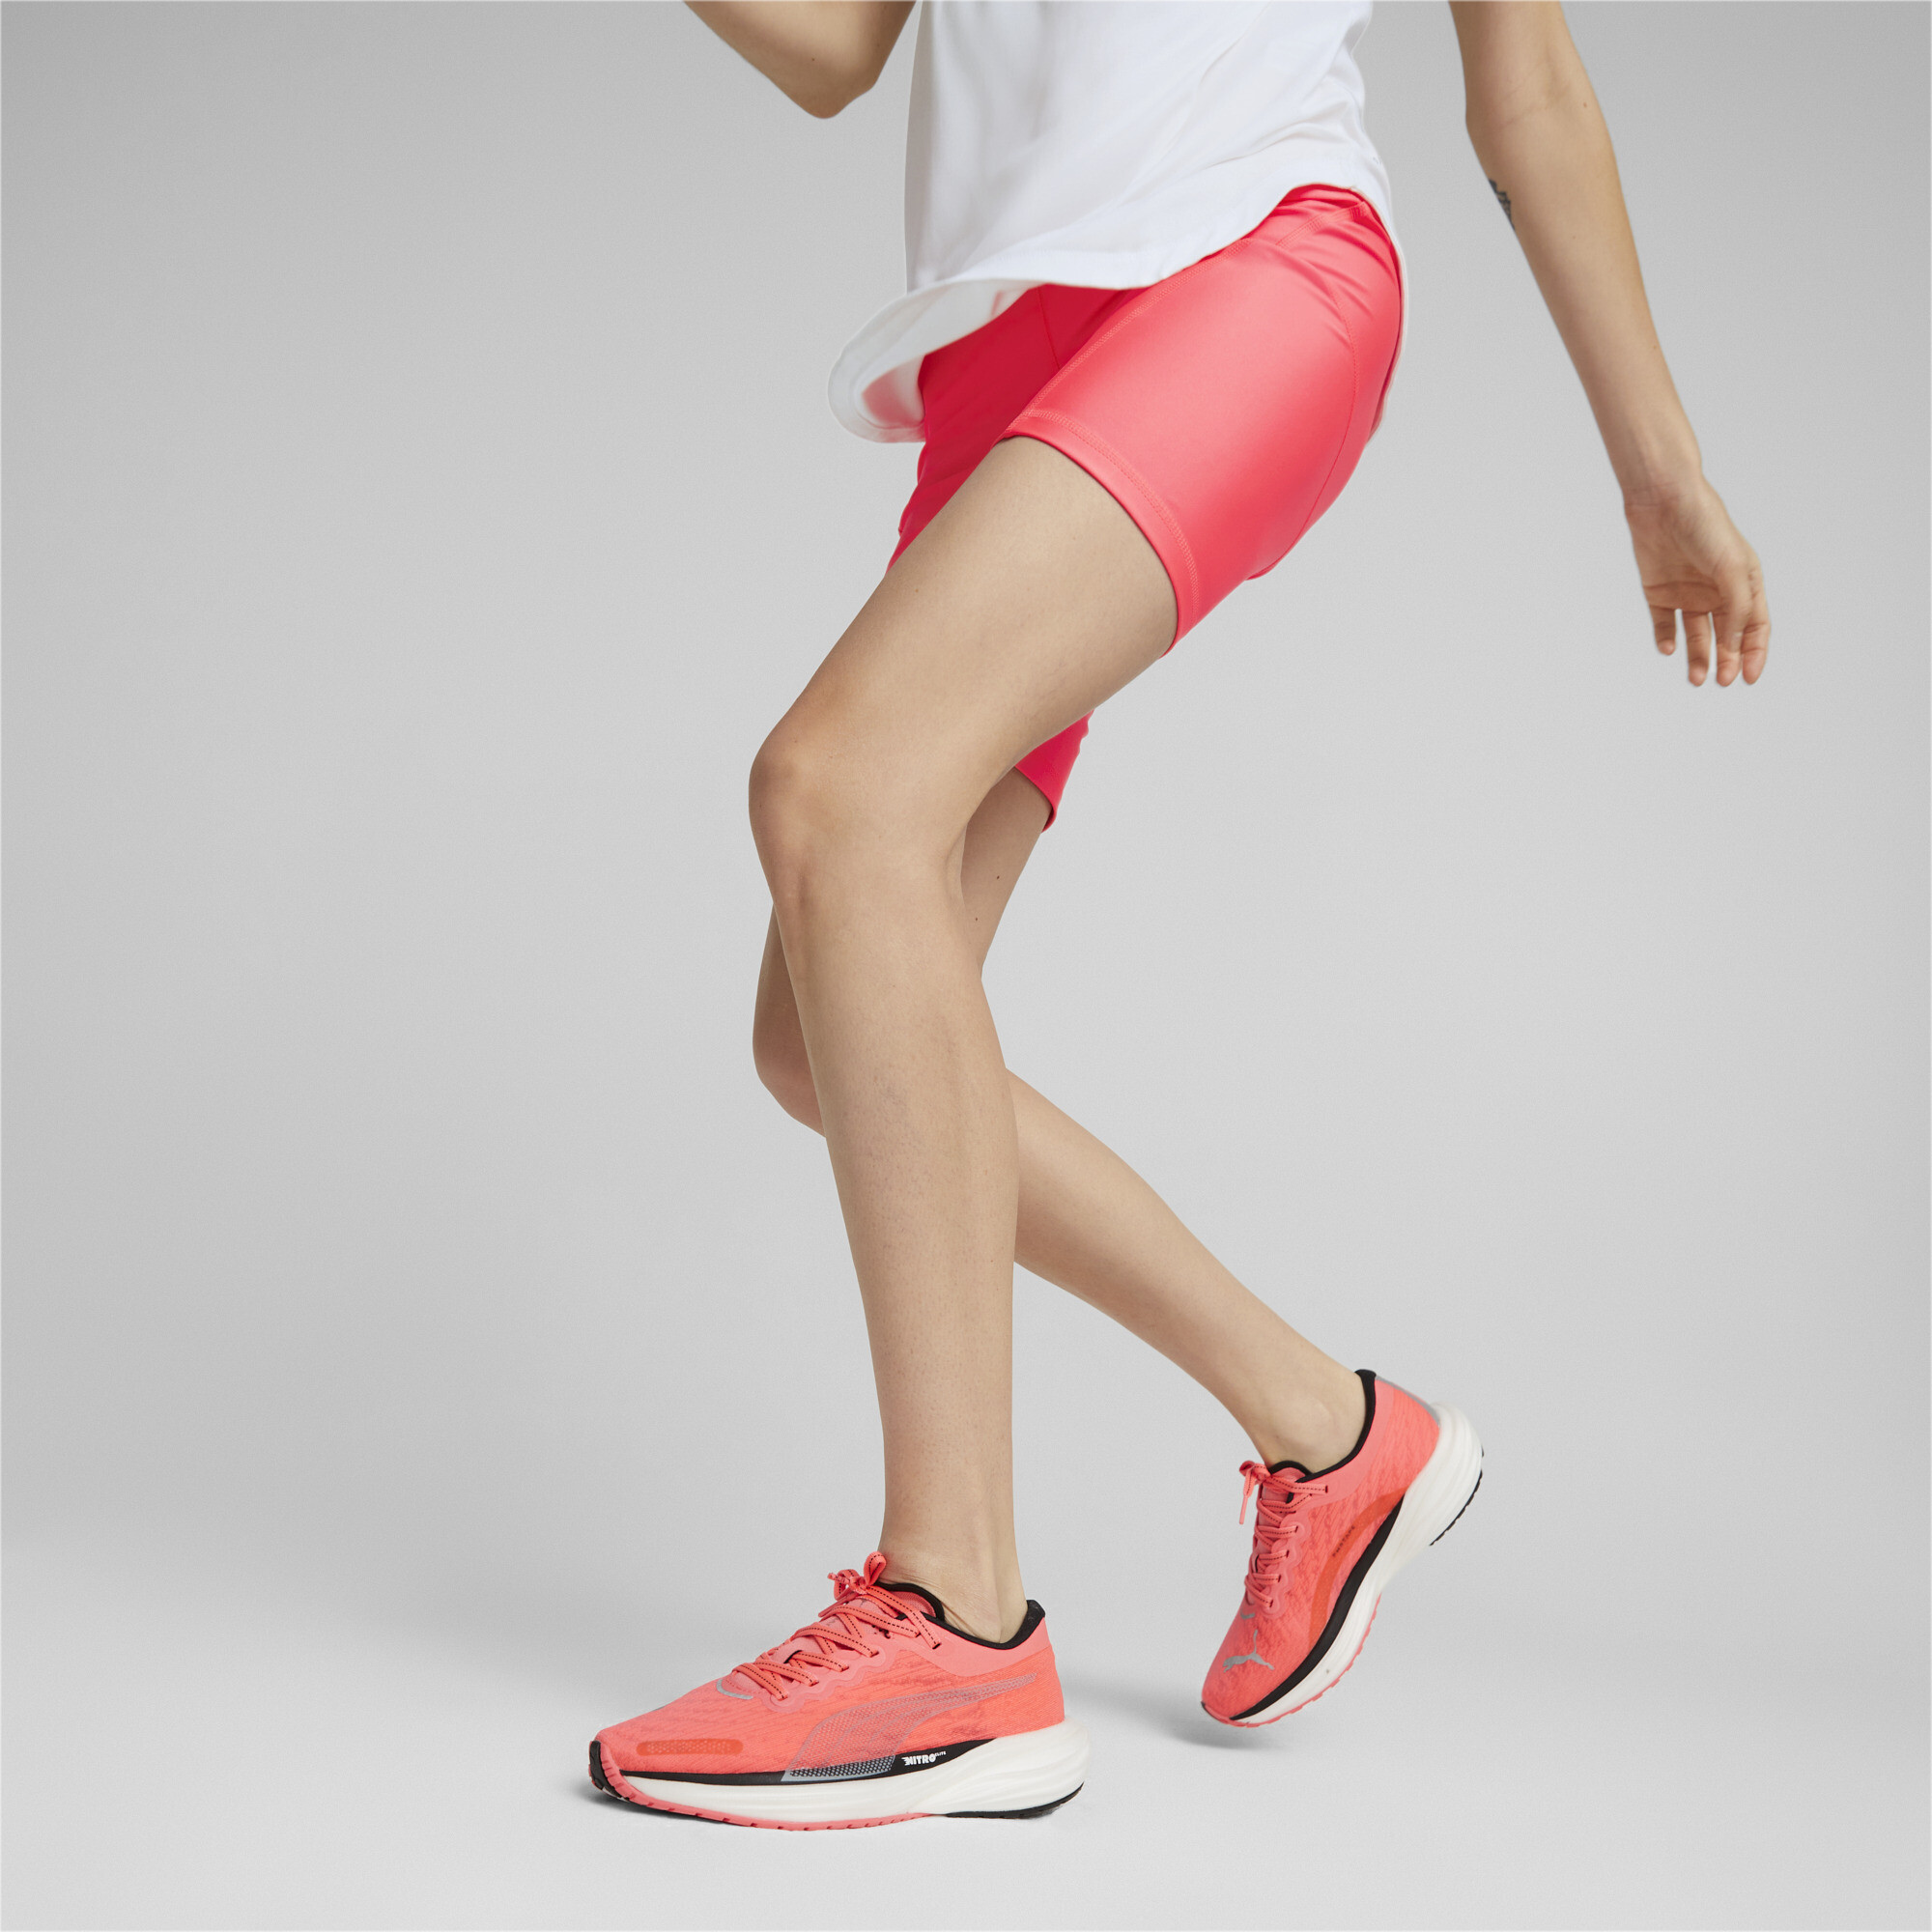 Women's PUMA Deviate NITROâ¢ 2 Running Shoes In Pink, Size EU 40.5